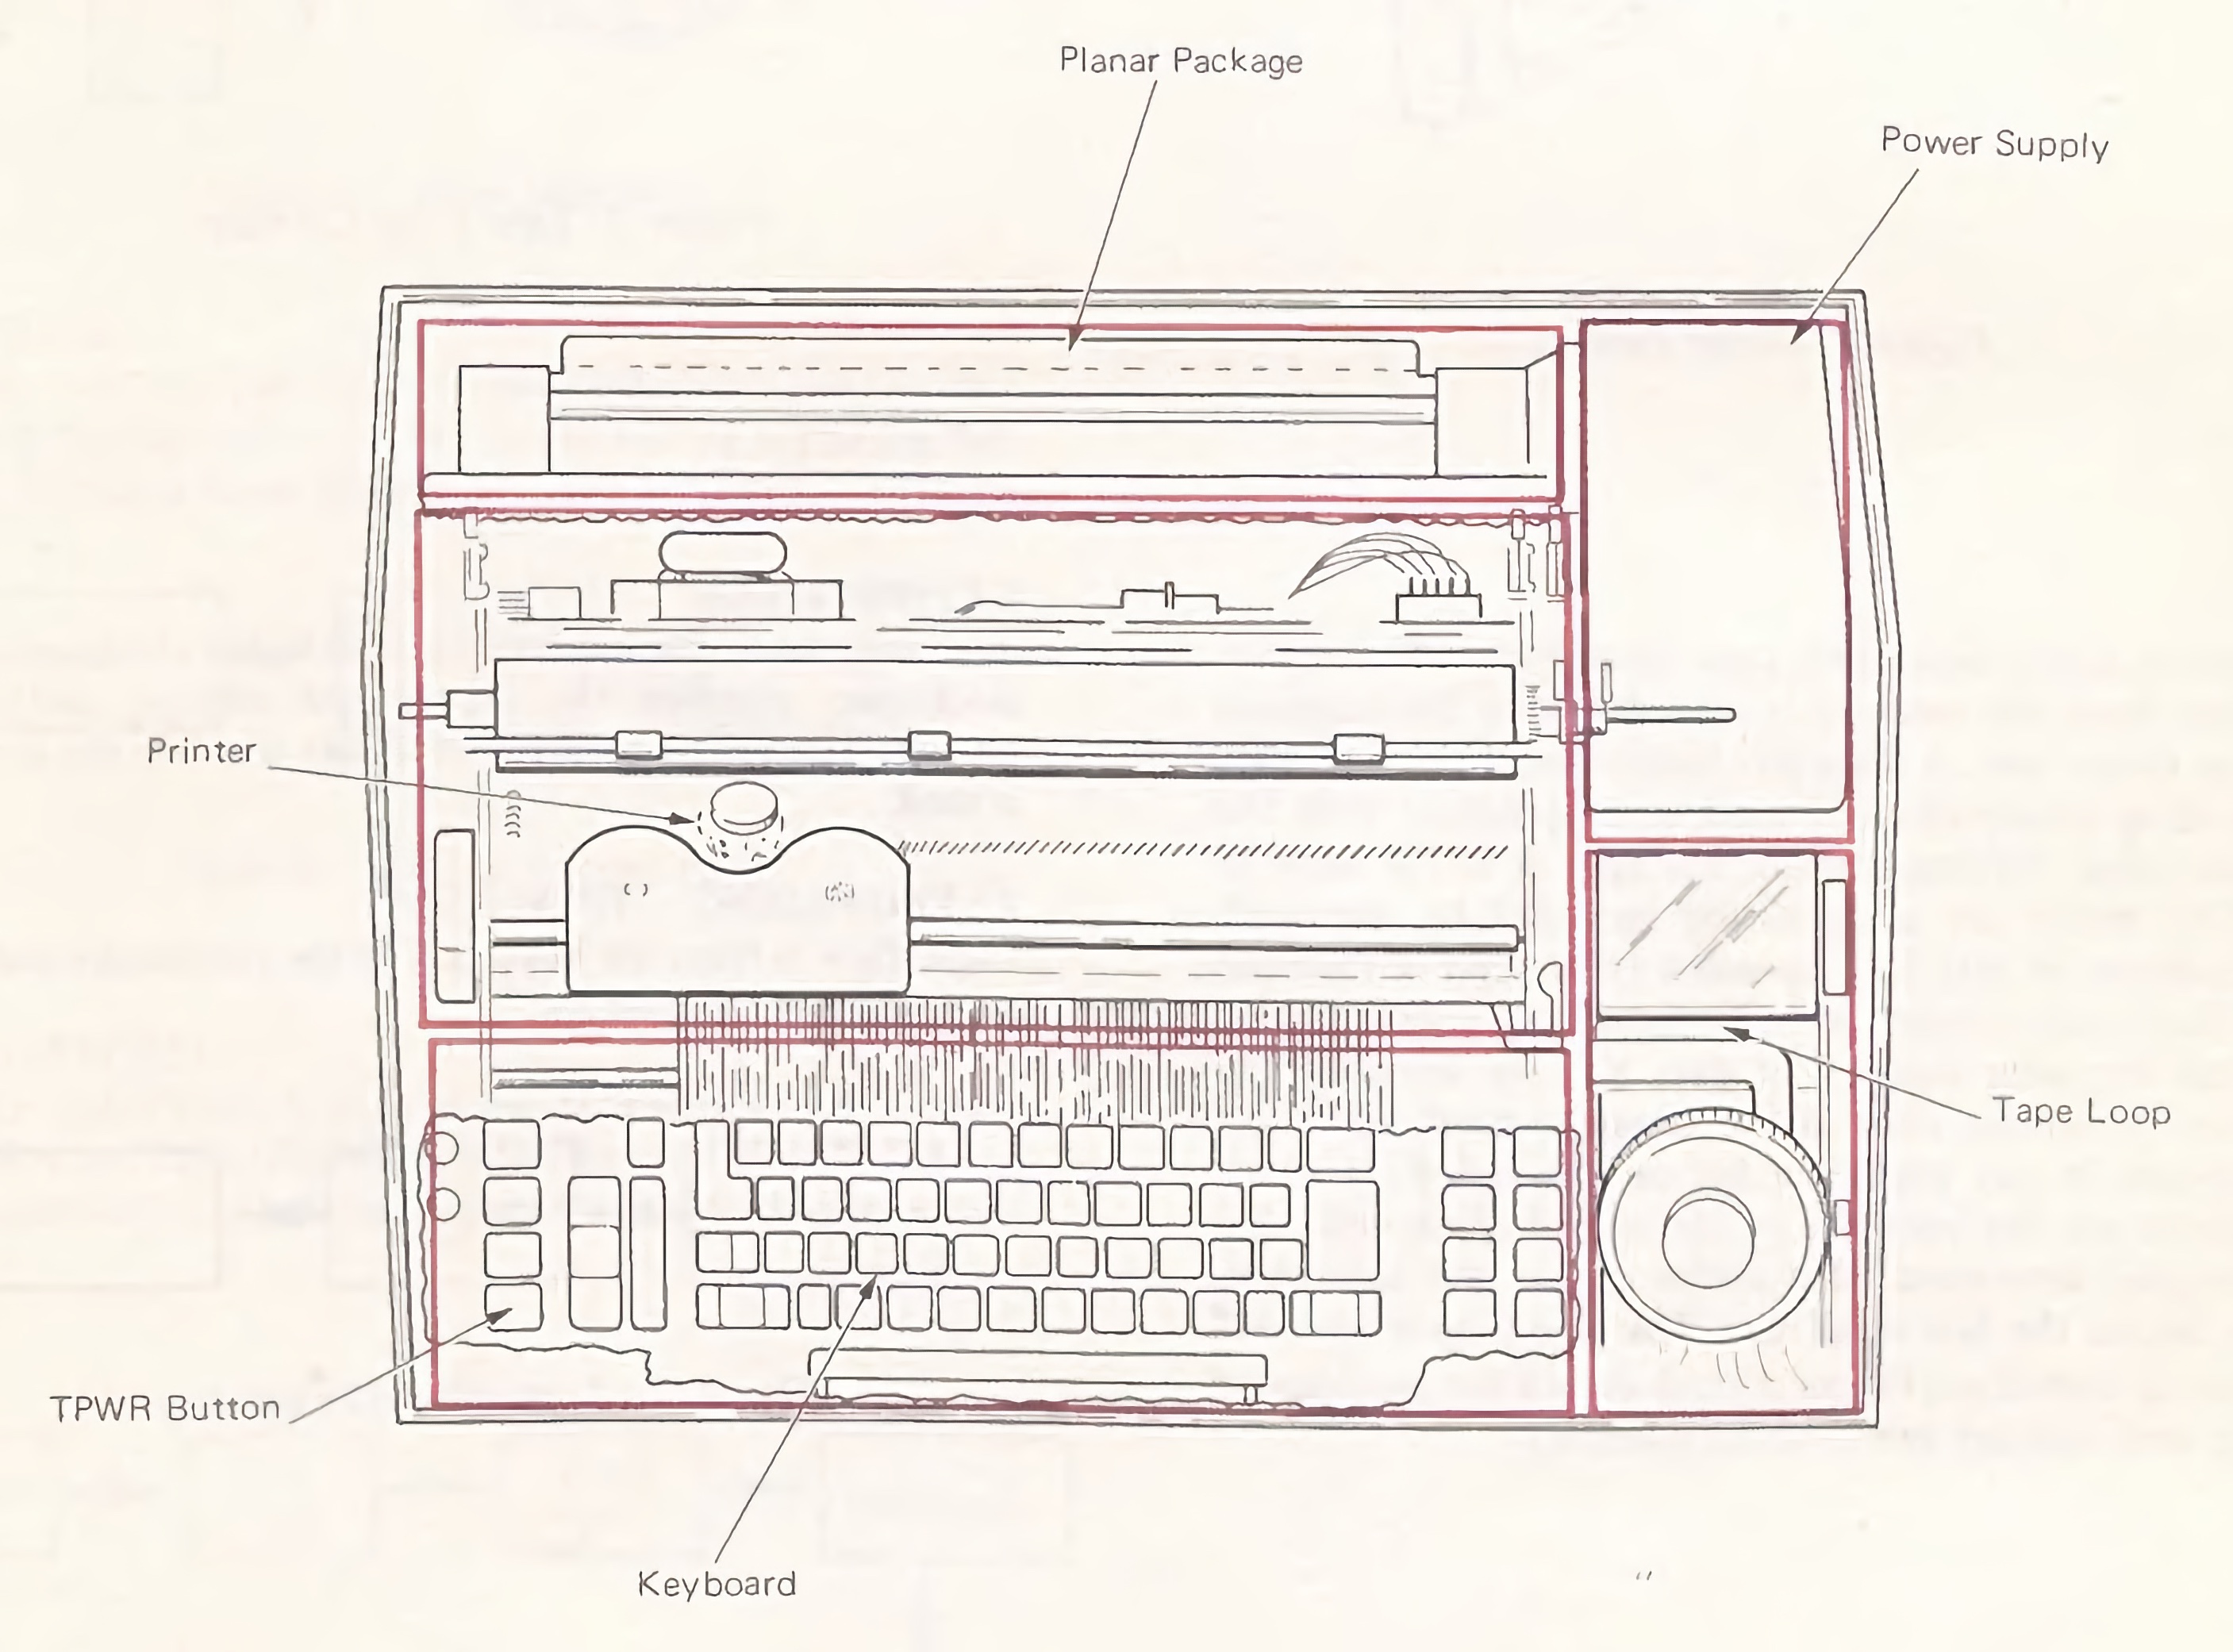 Layout of the IBM Memory Typewriter